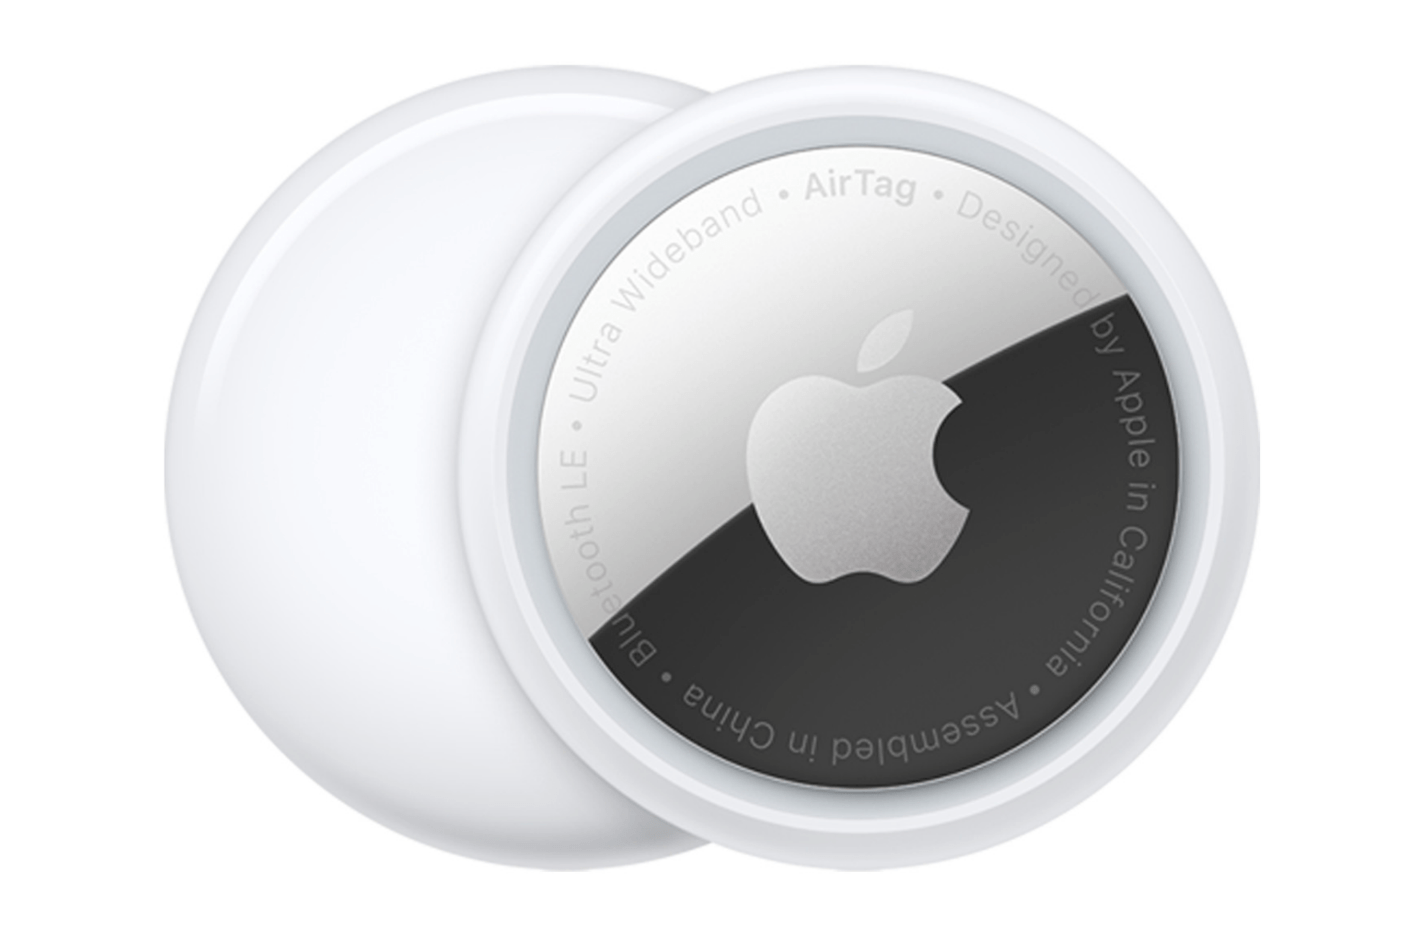 Apple AirTag photo